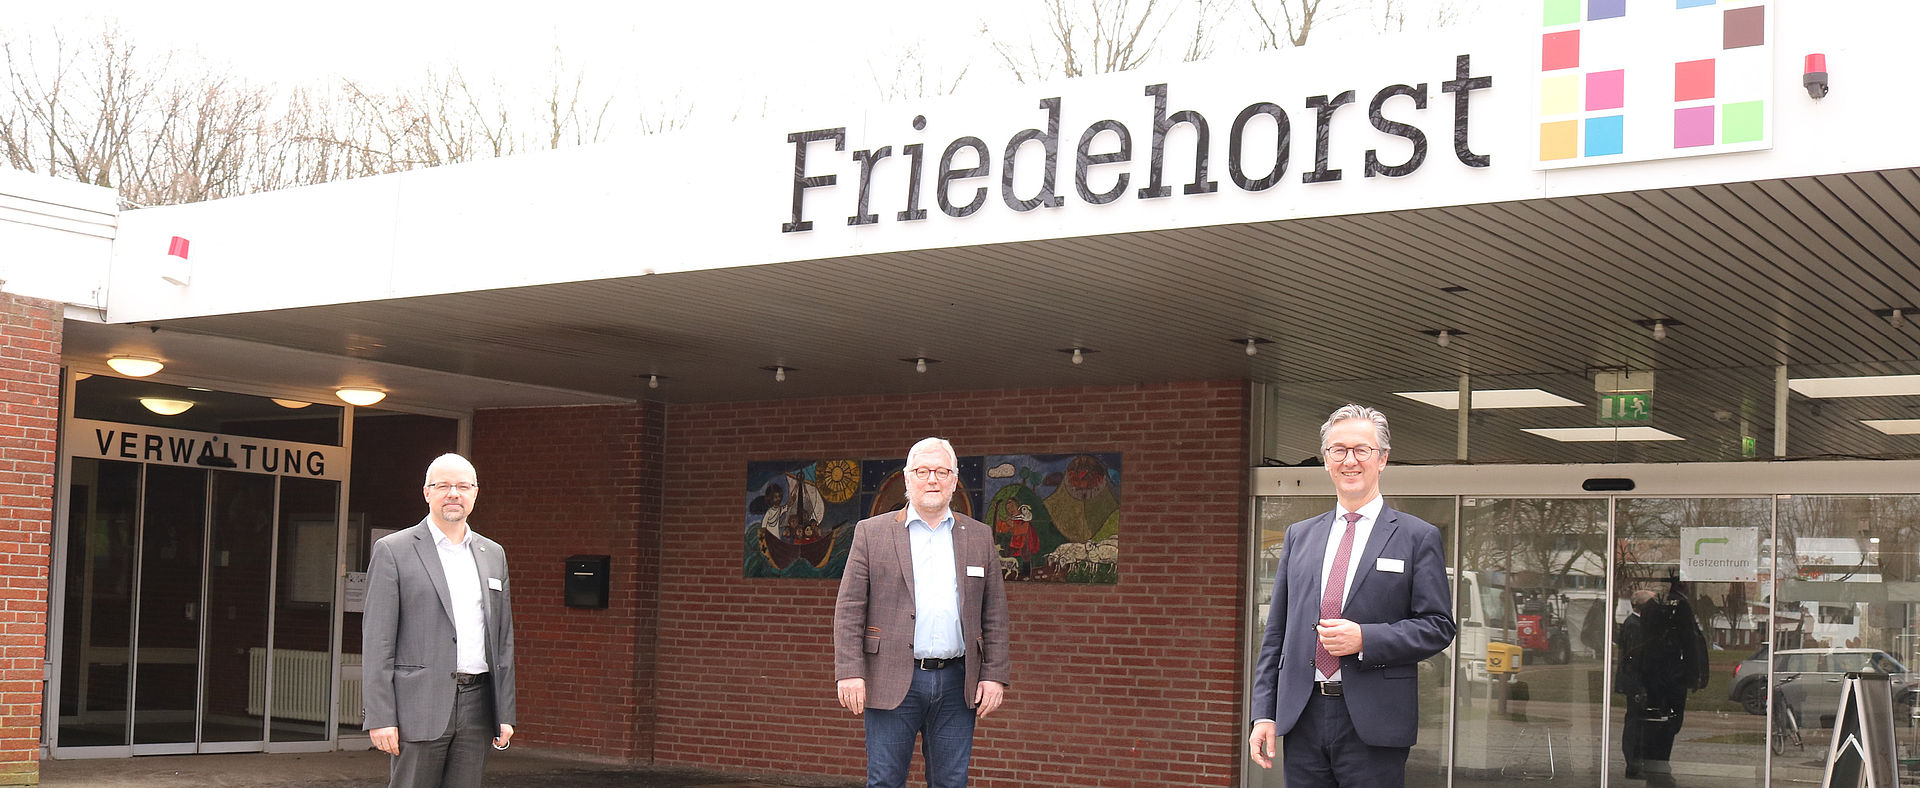 Die neuen Vorstände in Friedehorst vor dem Verwaltungsgebäude.